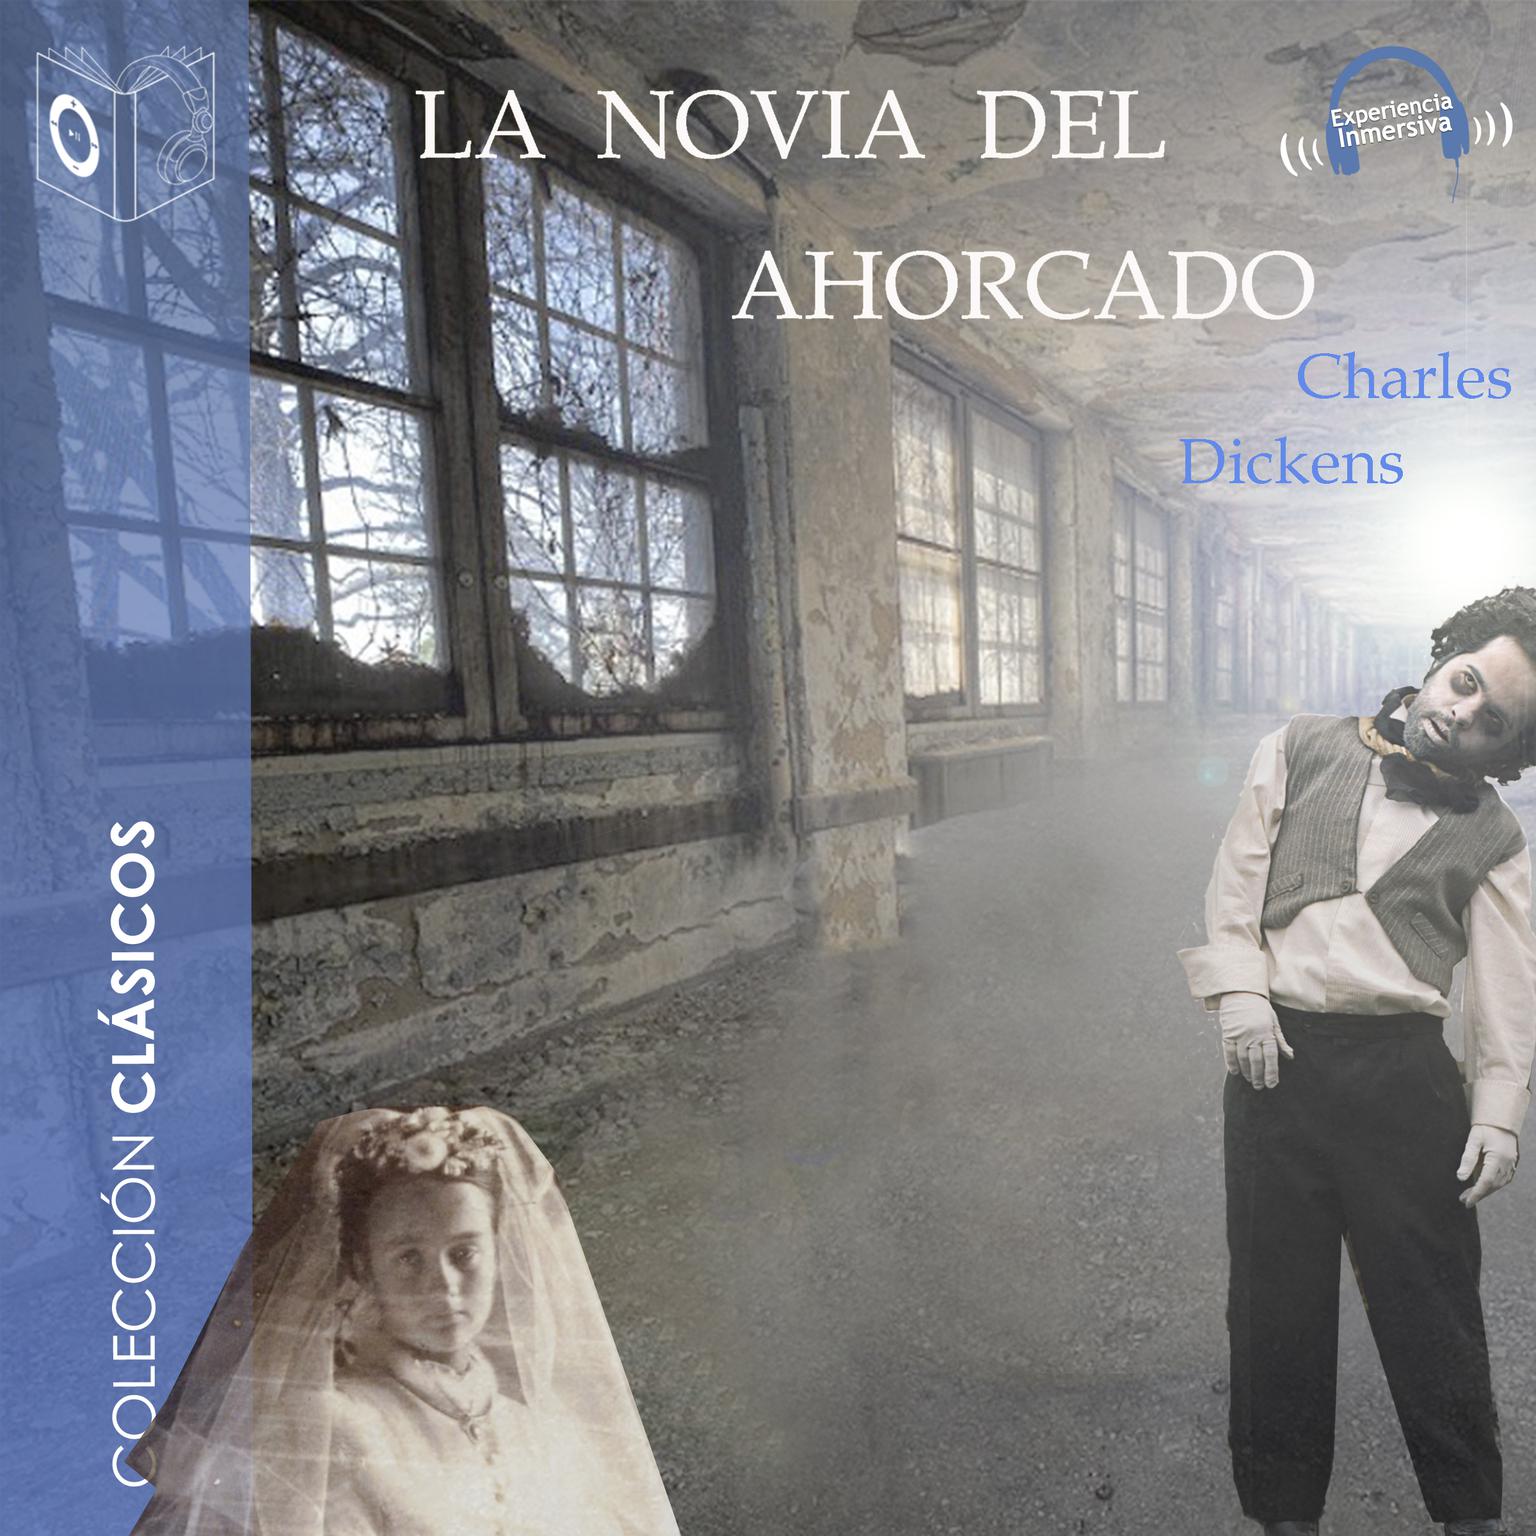 La novia del ahorcado Audiobook, by Charles Dickens